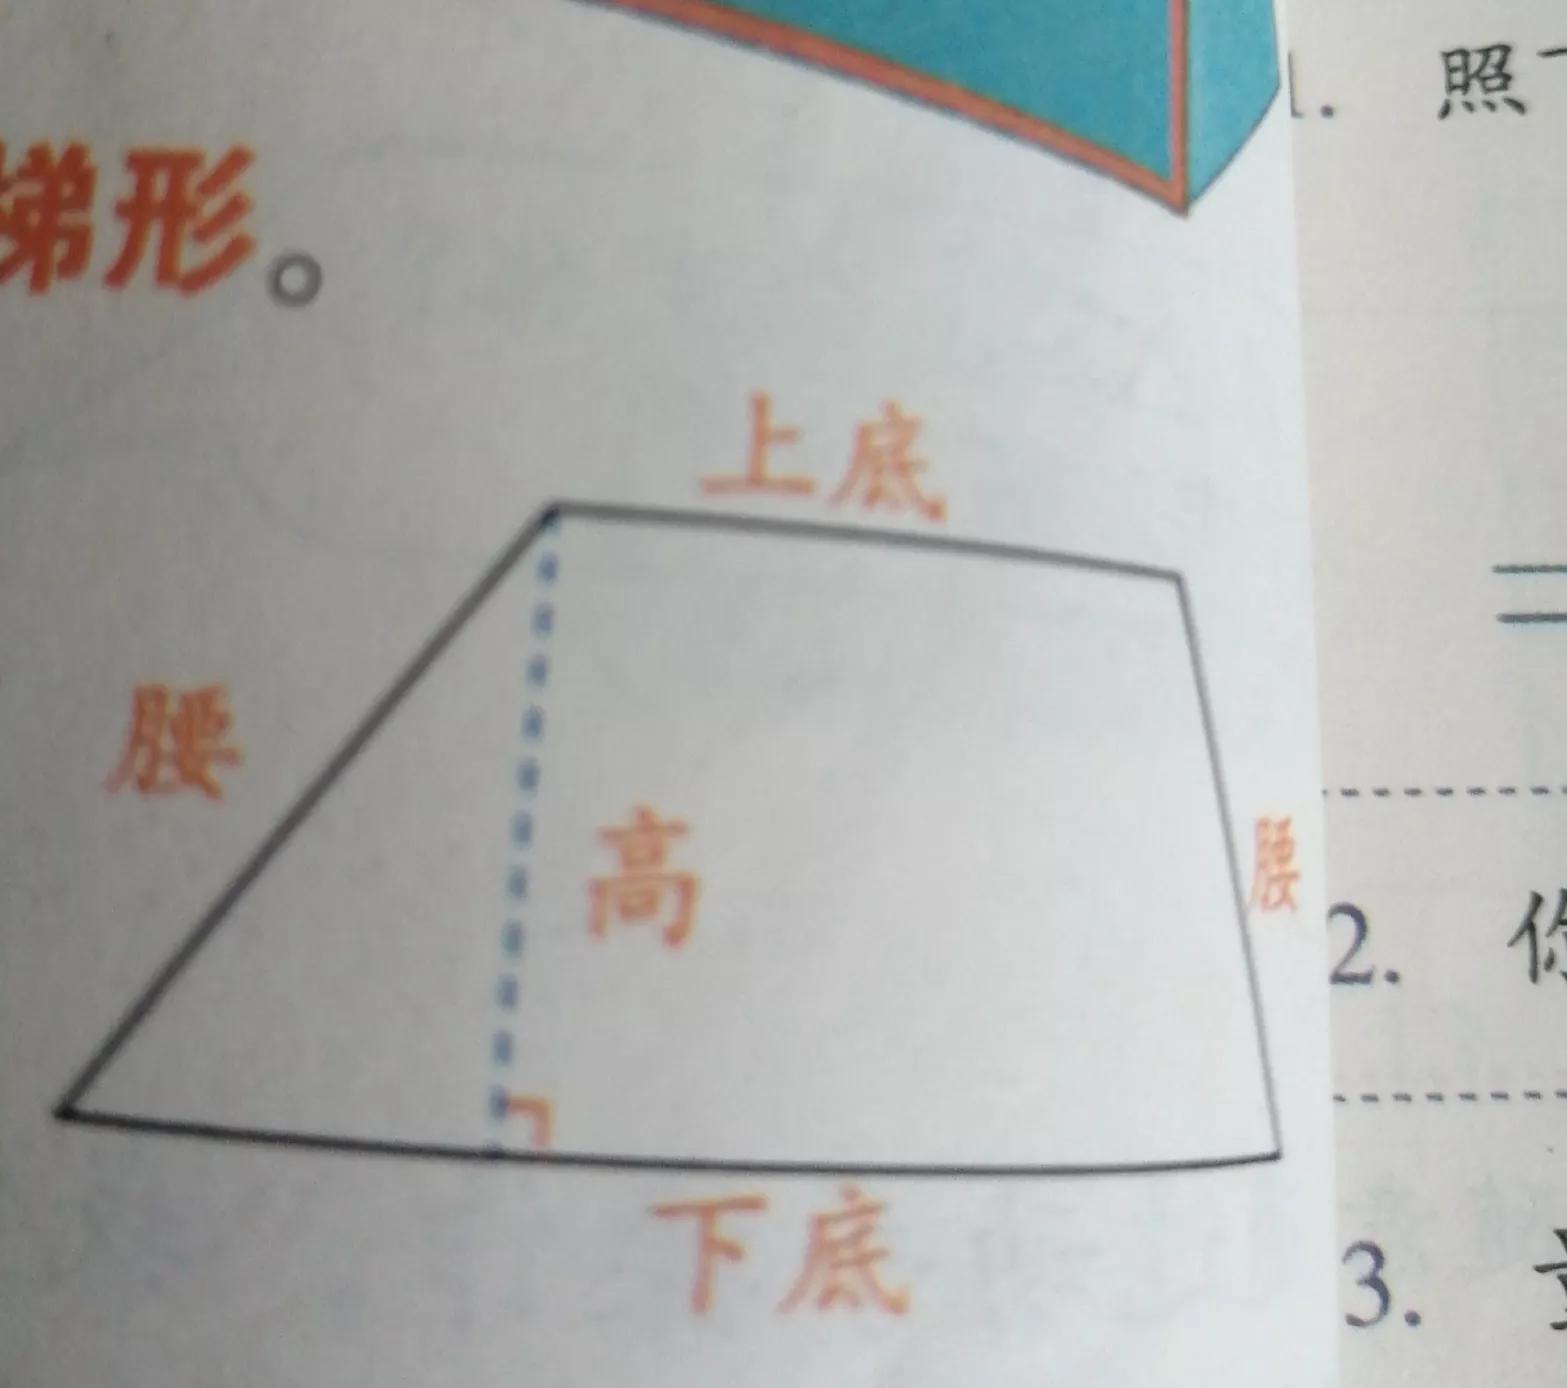 梯形是特殊的平行四边形吗